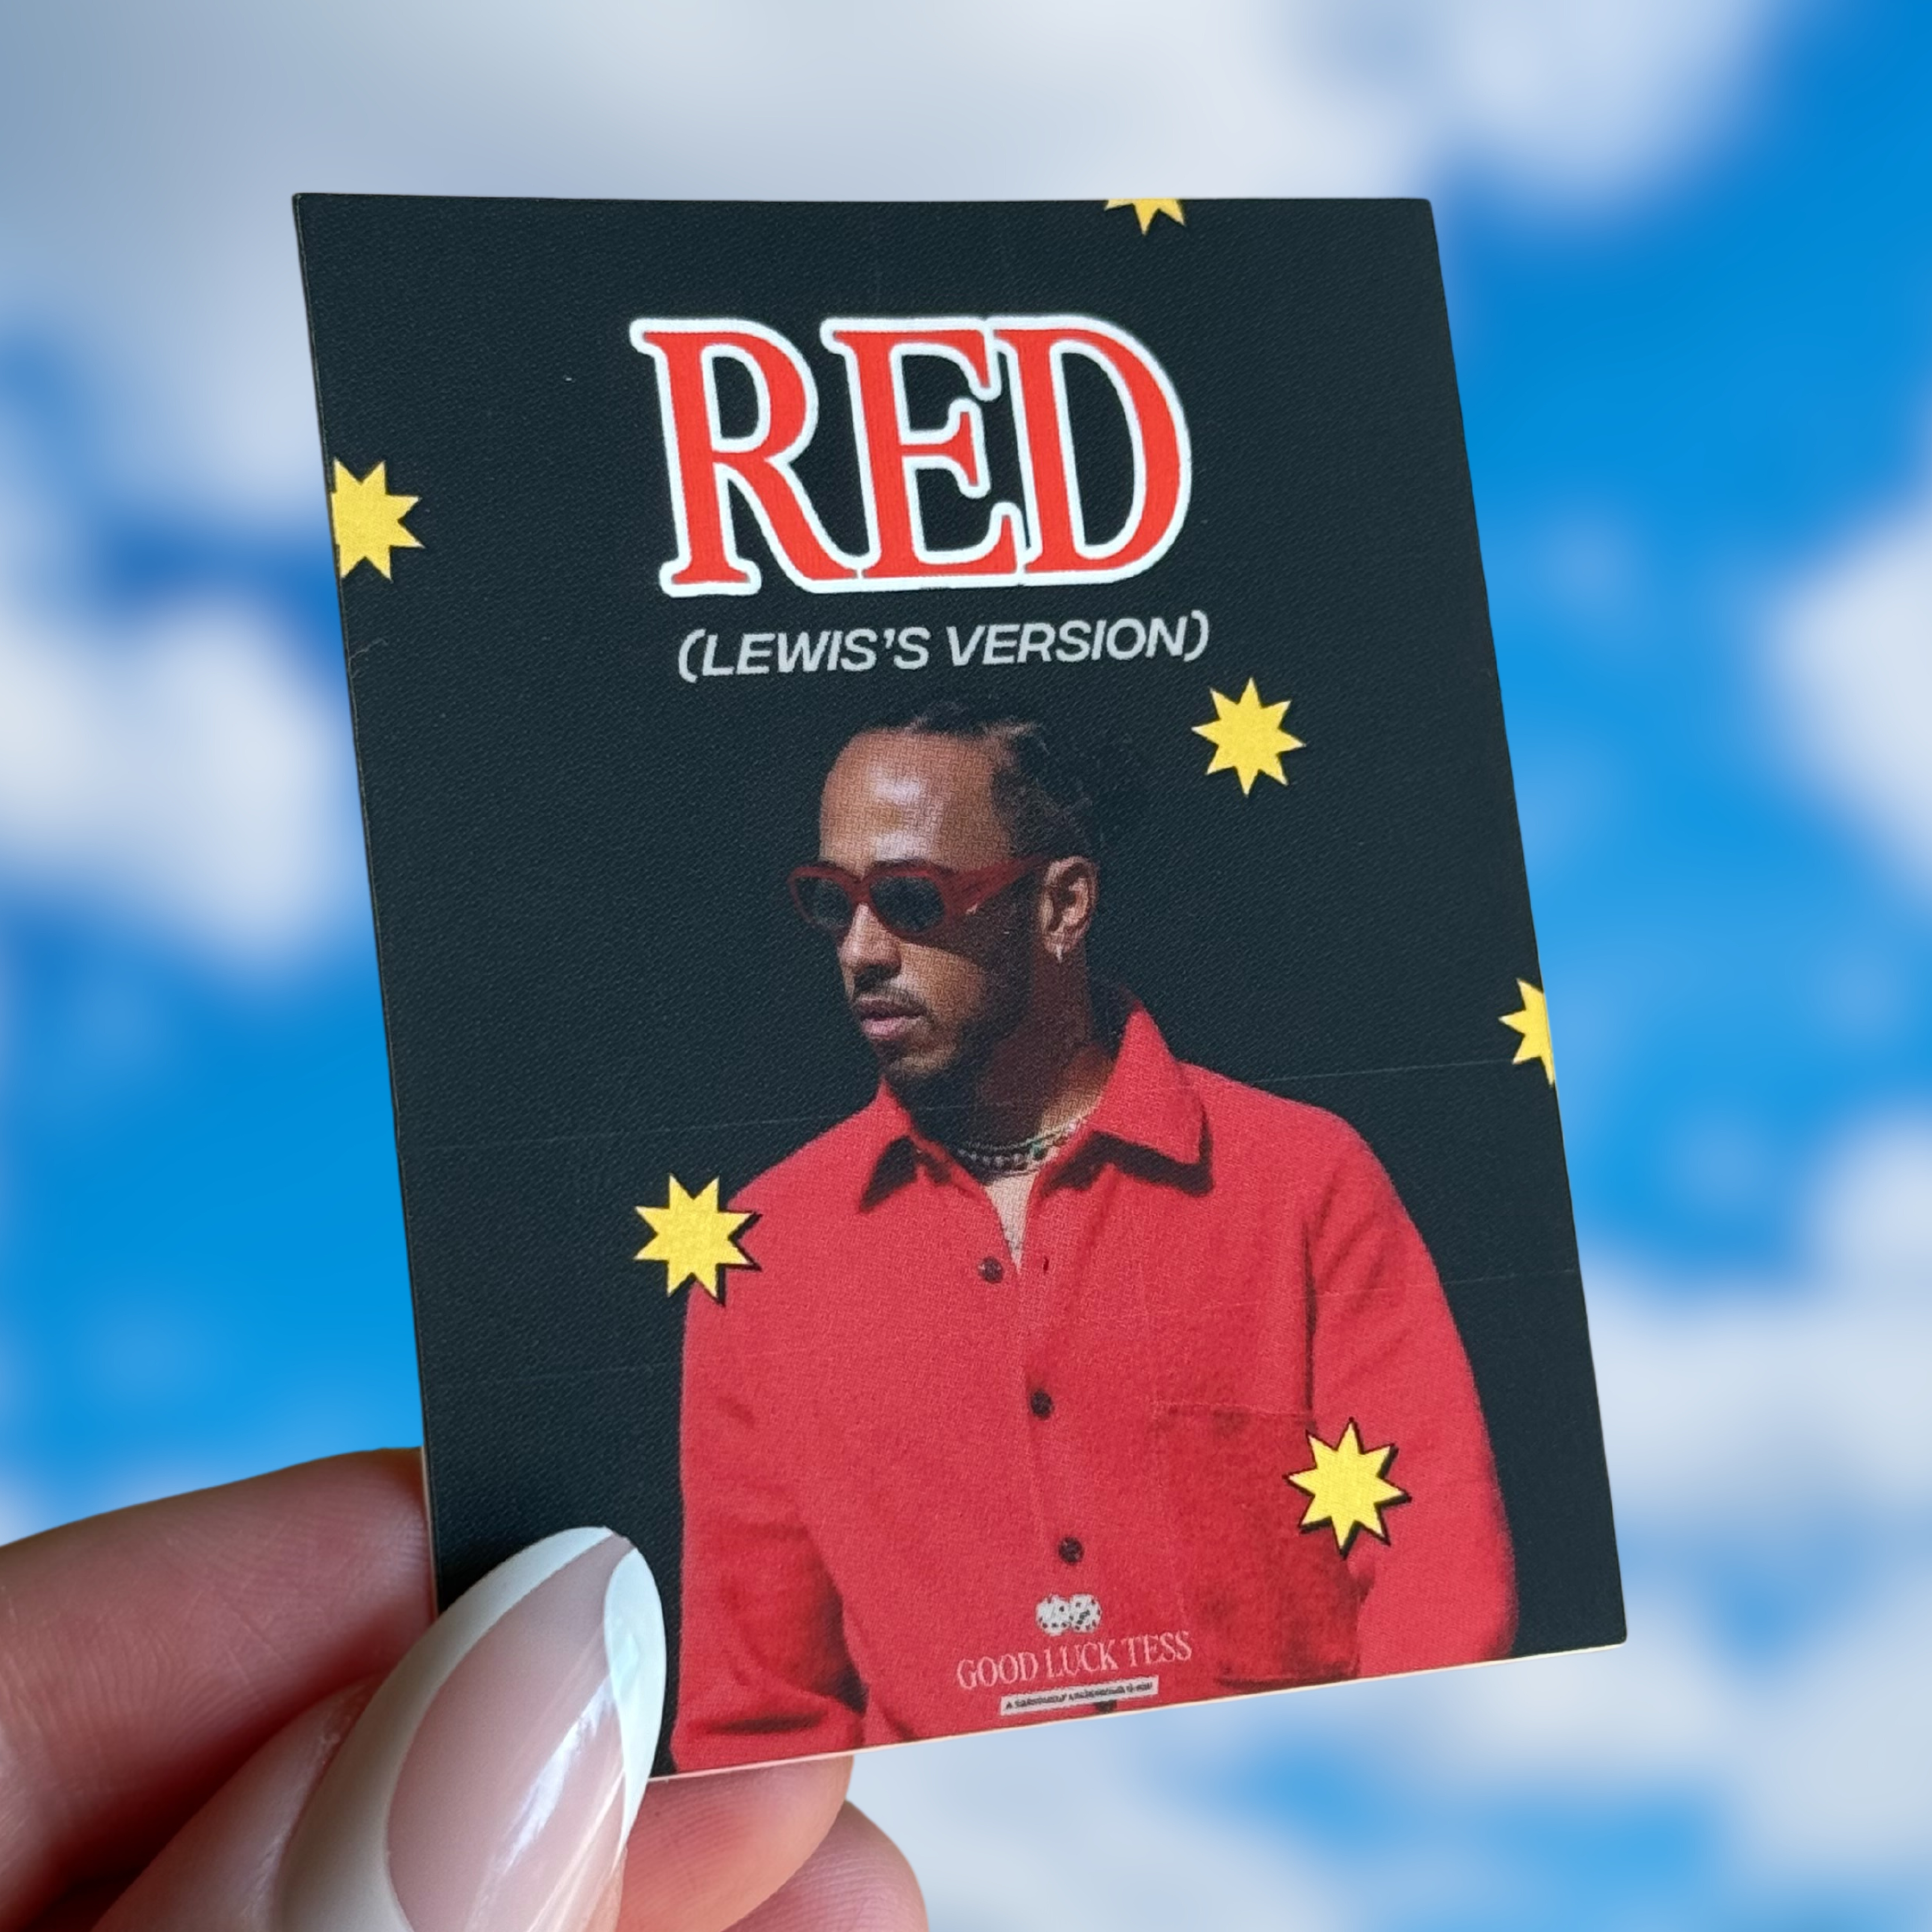 Red (Lewis's Version) sticker